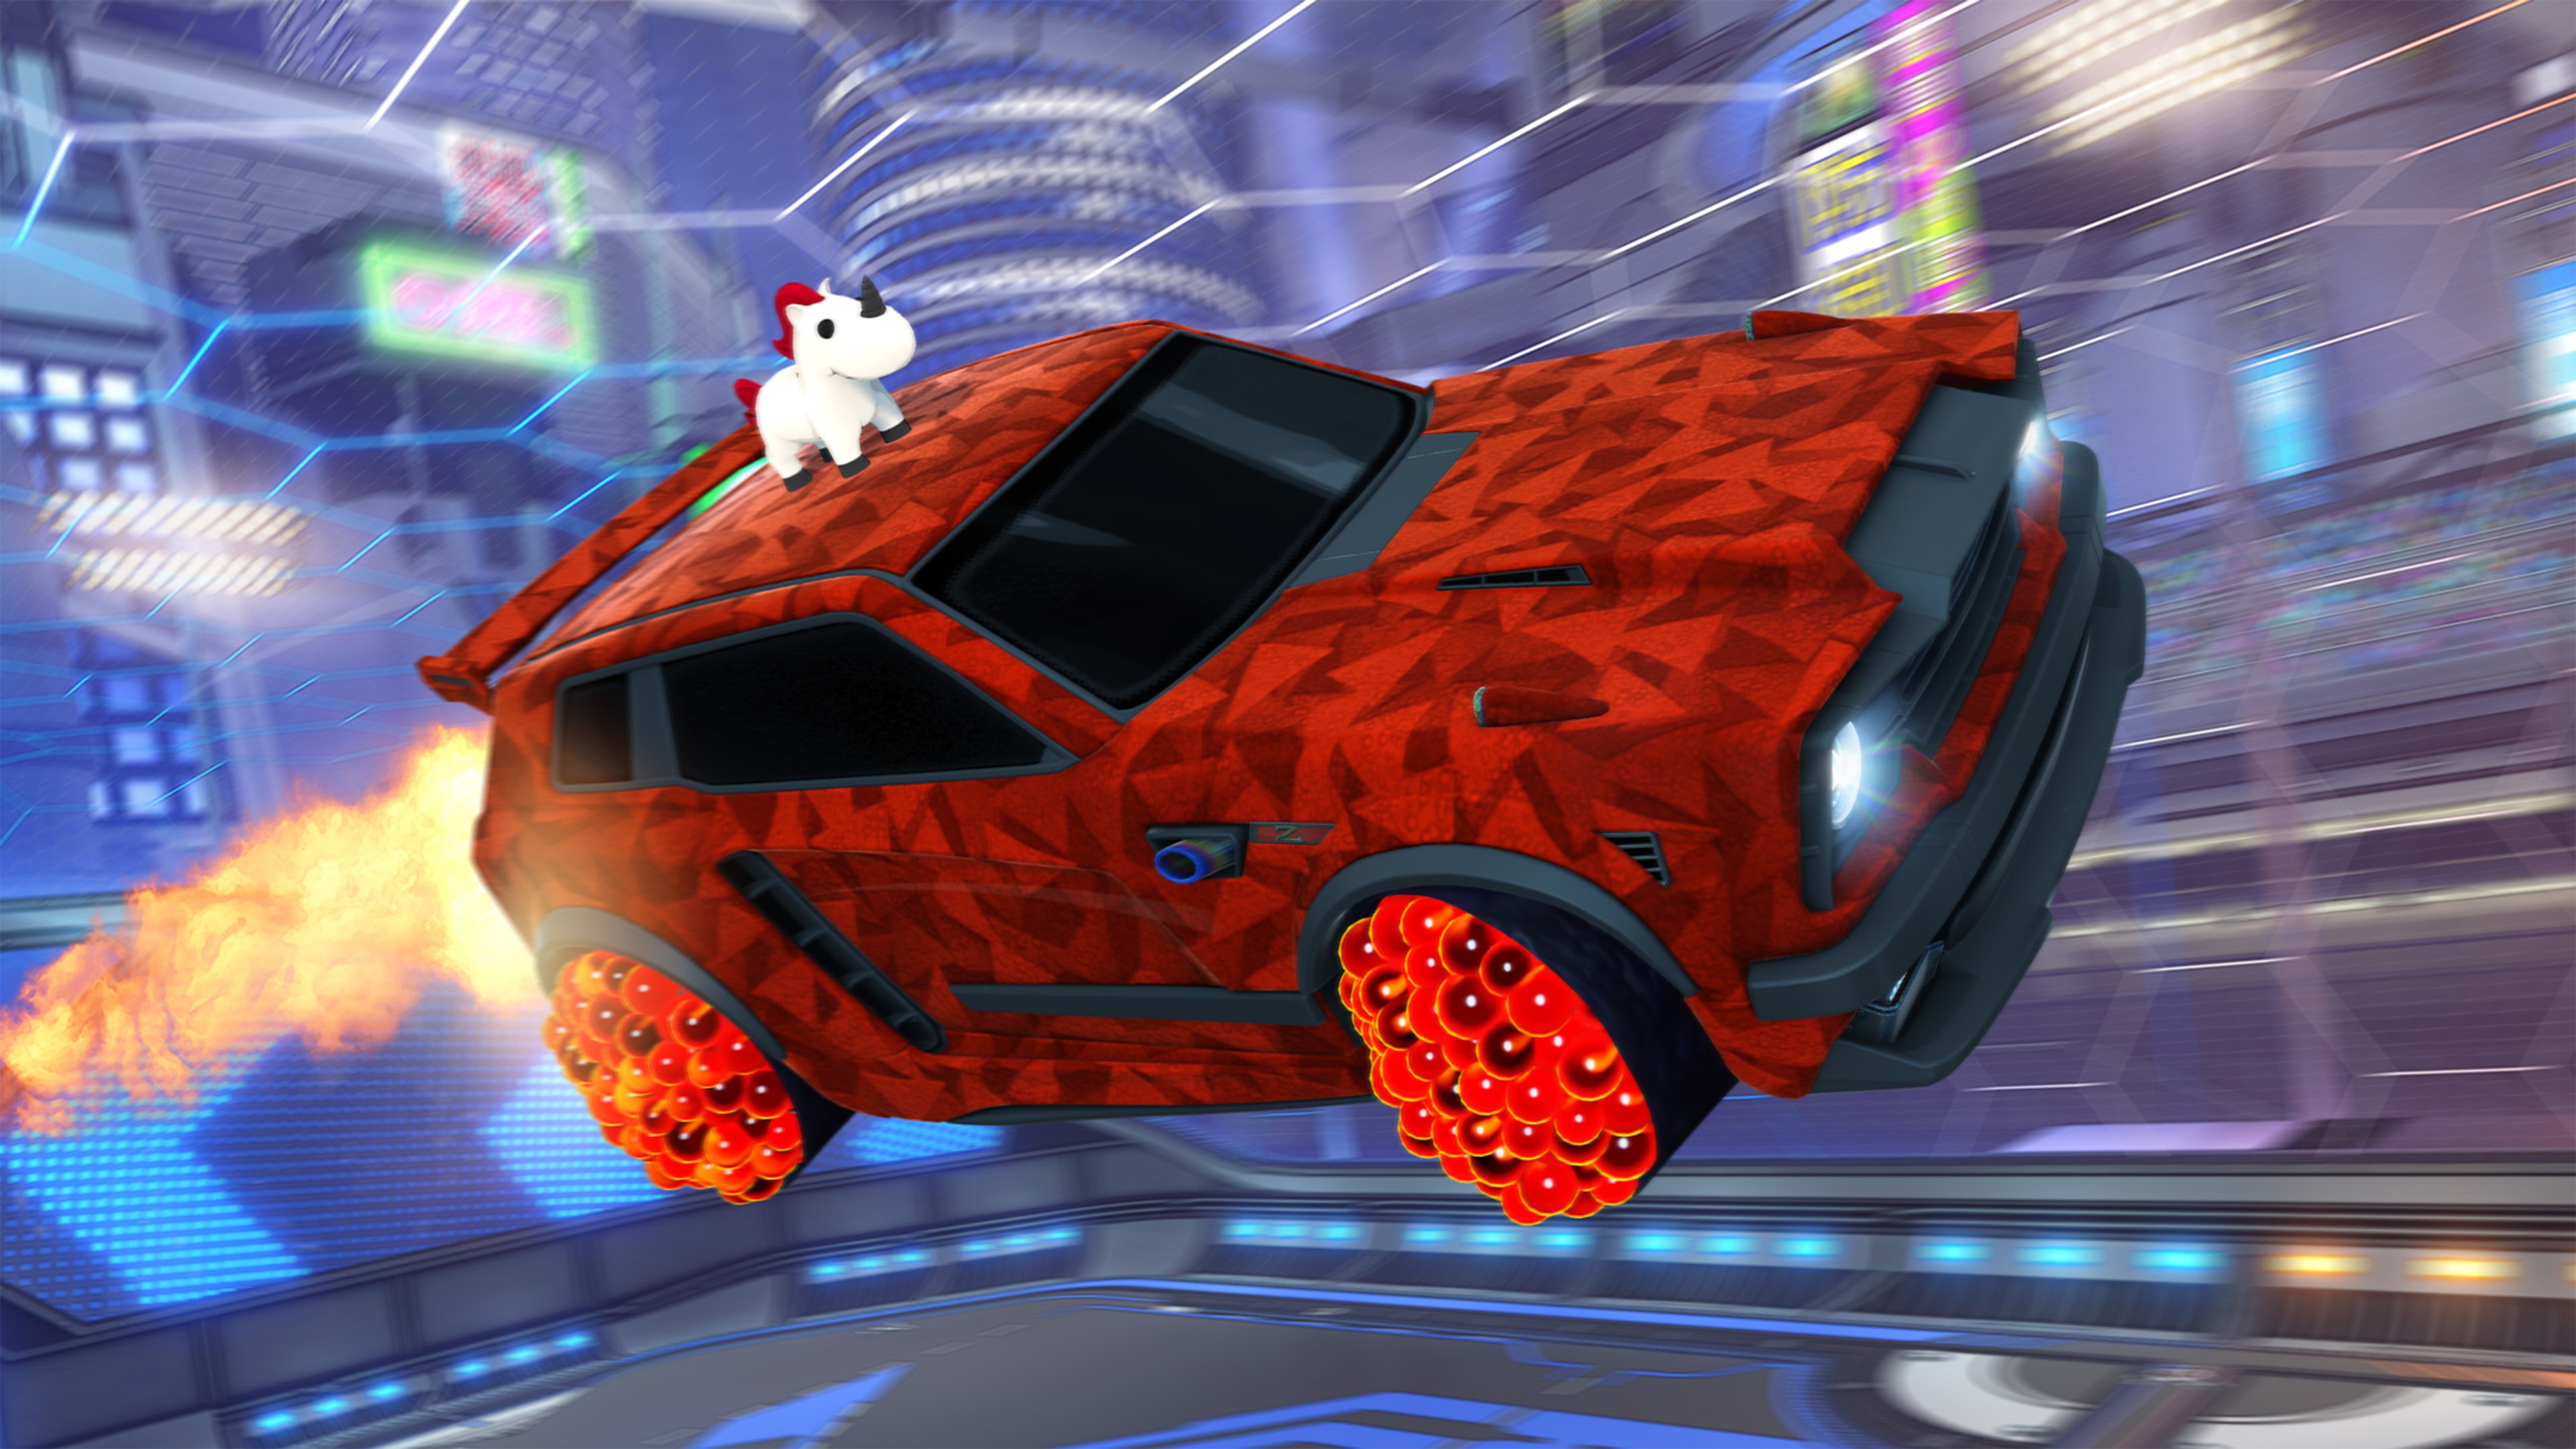 لقطة شاشة لـ Rocket League تظهر فيها سيارة مرسوم على سقفها حيوان يشبه وحيد القرن مطلية بلون أحمر